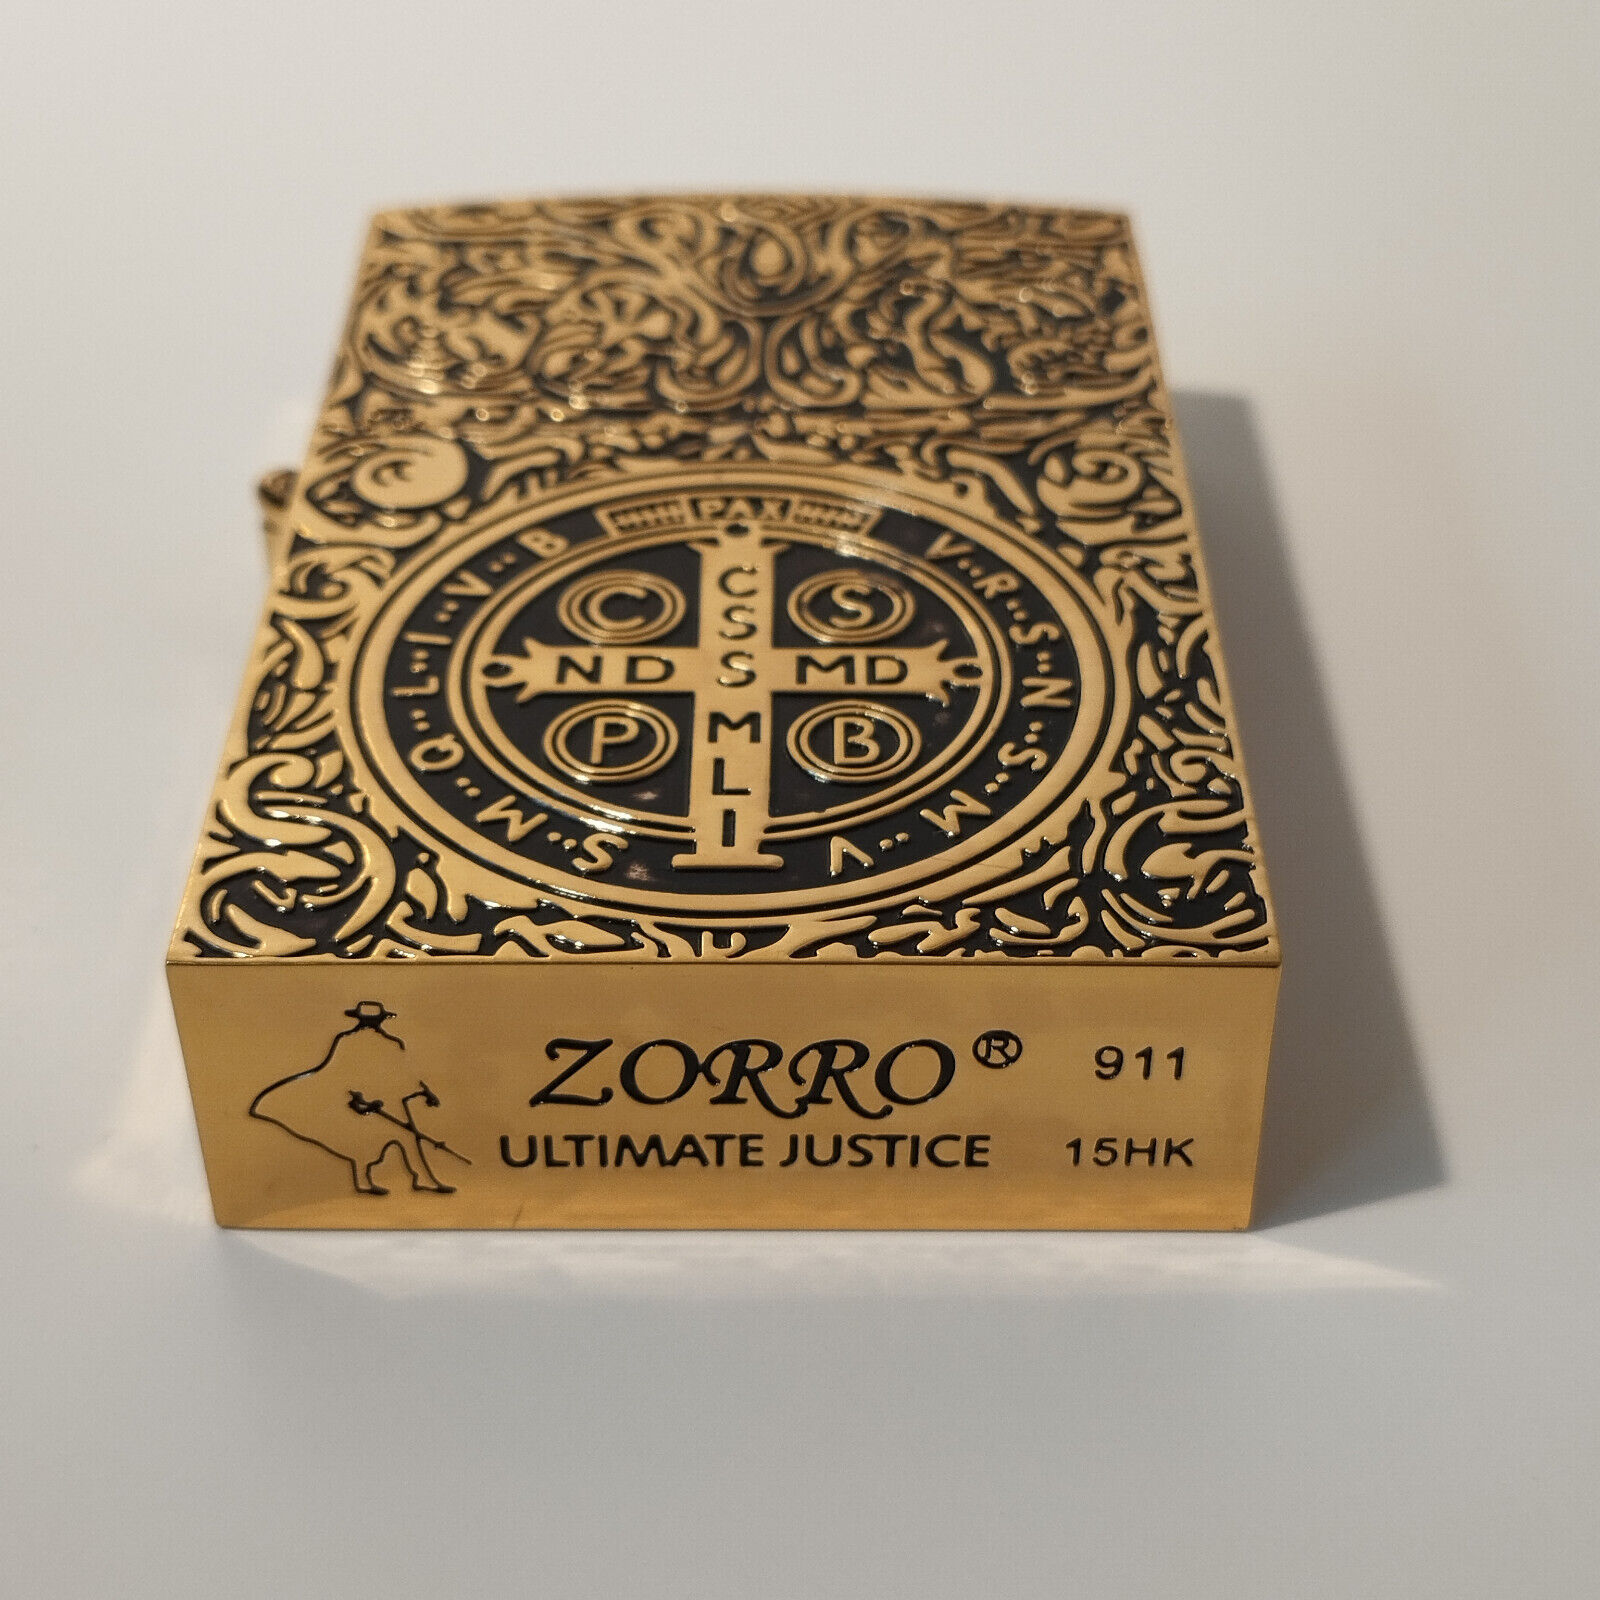 Zorro Lighter Clearance Sale - Various Models & Colors (Please Read Description)